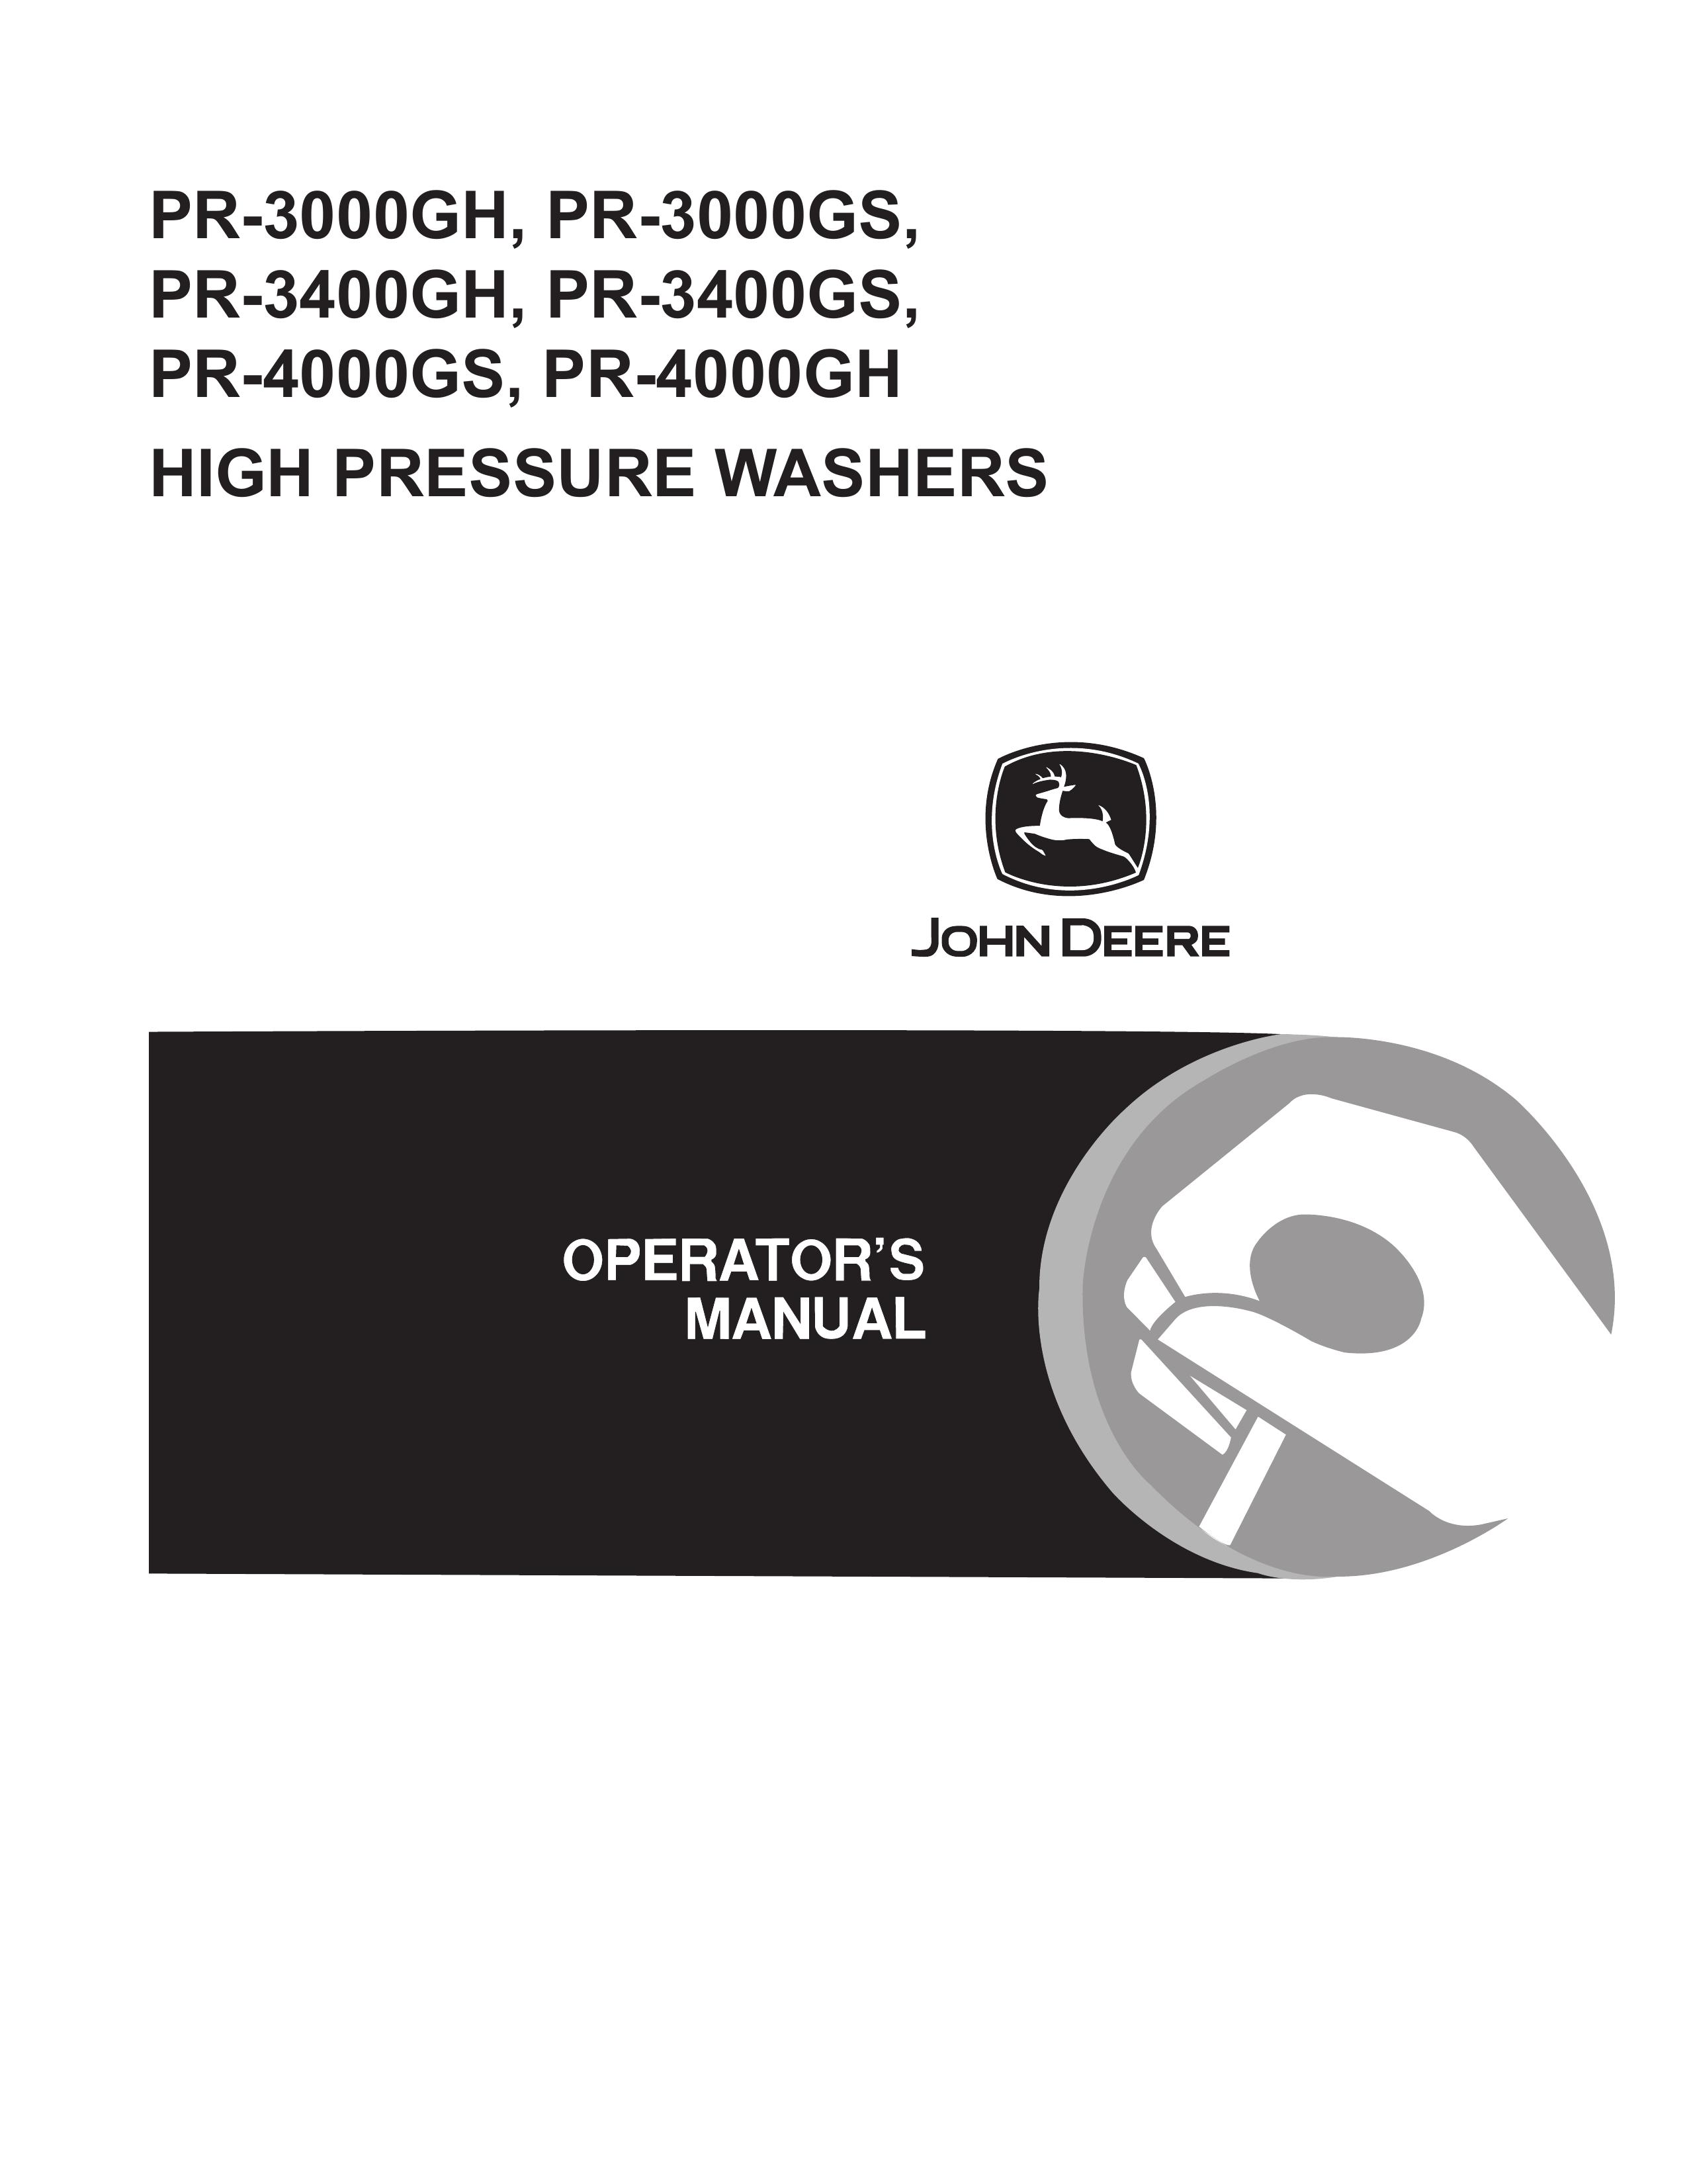 John Deere PR-3400GS Pressure Washer User Manual